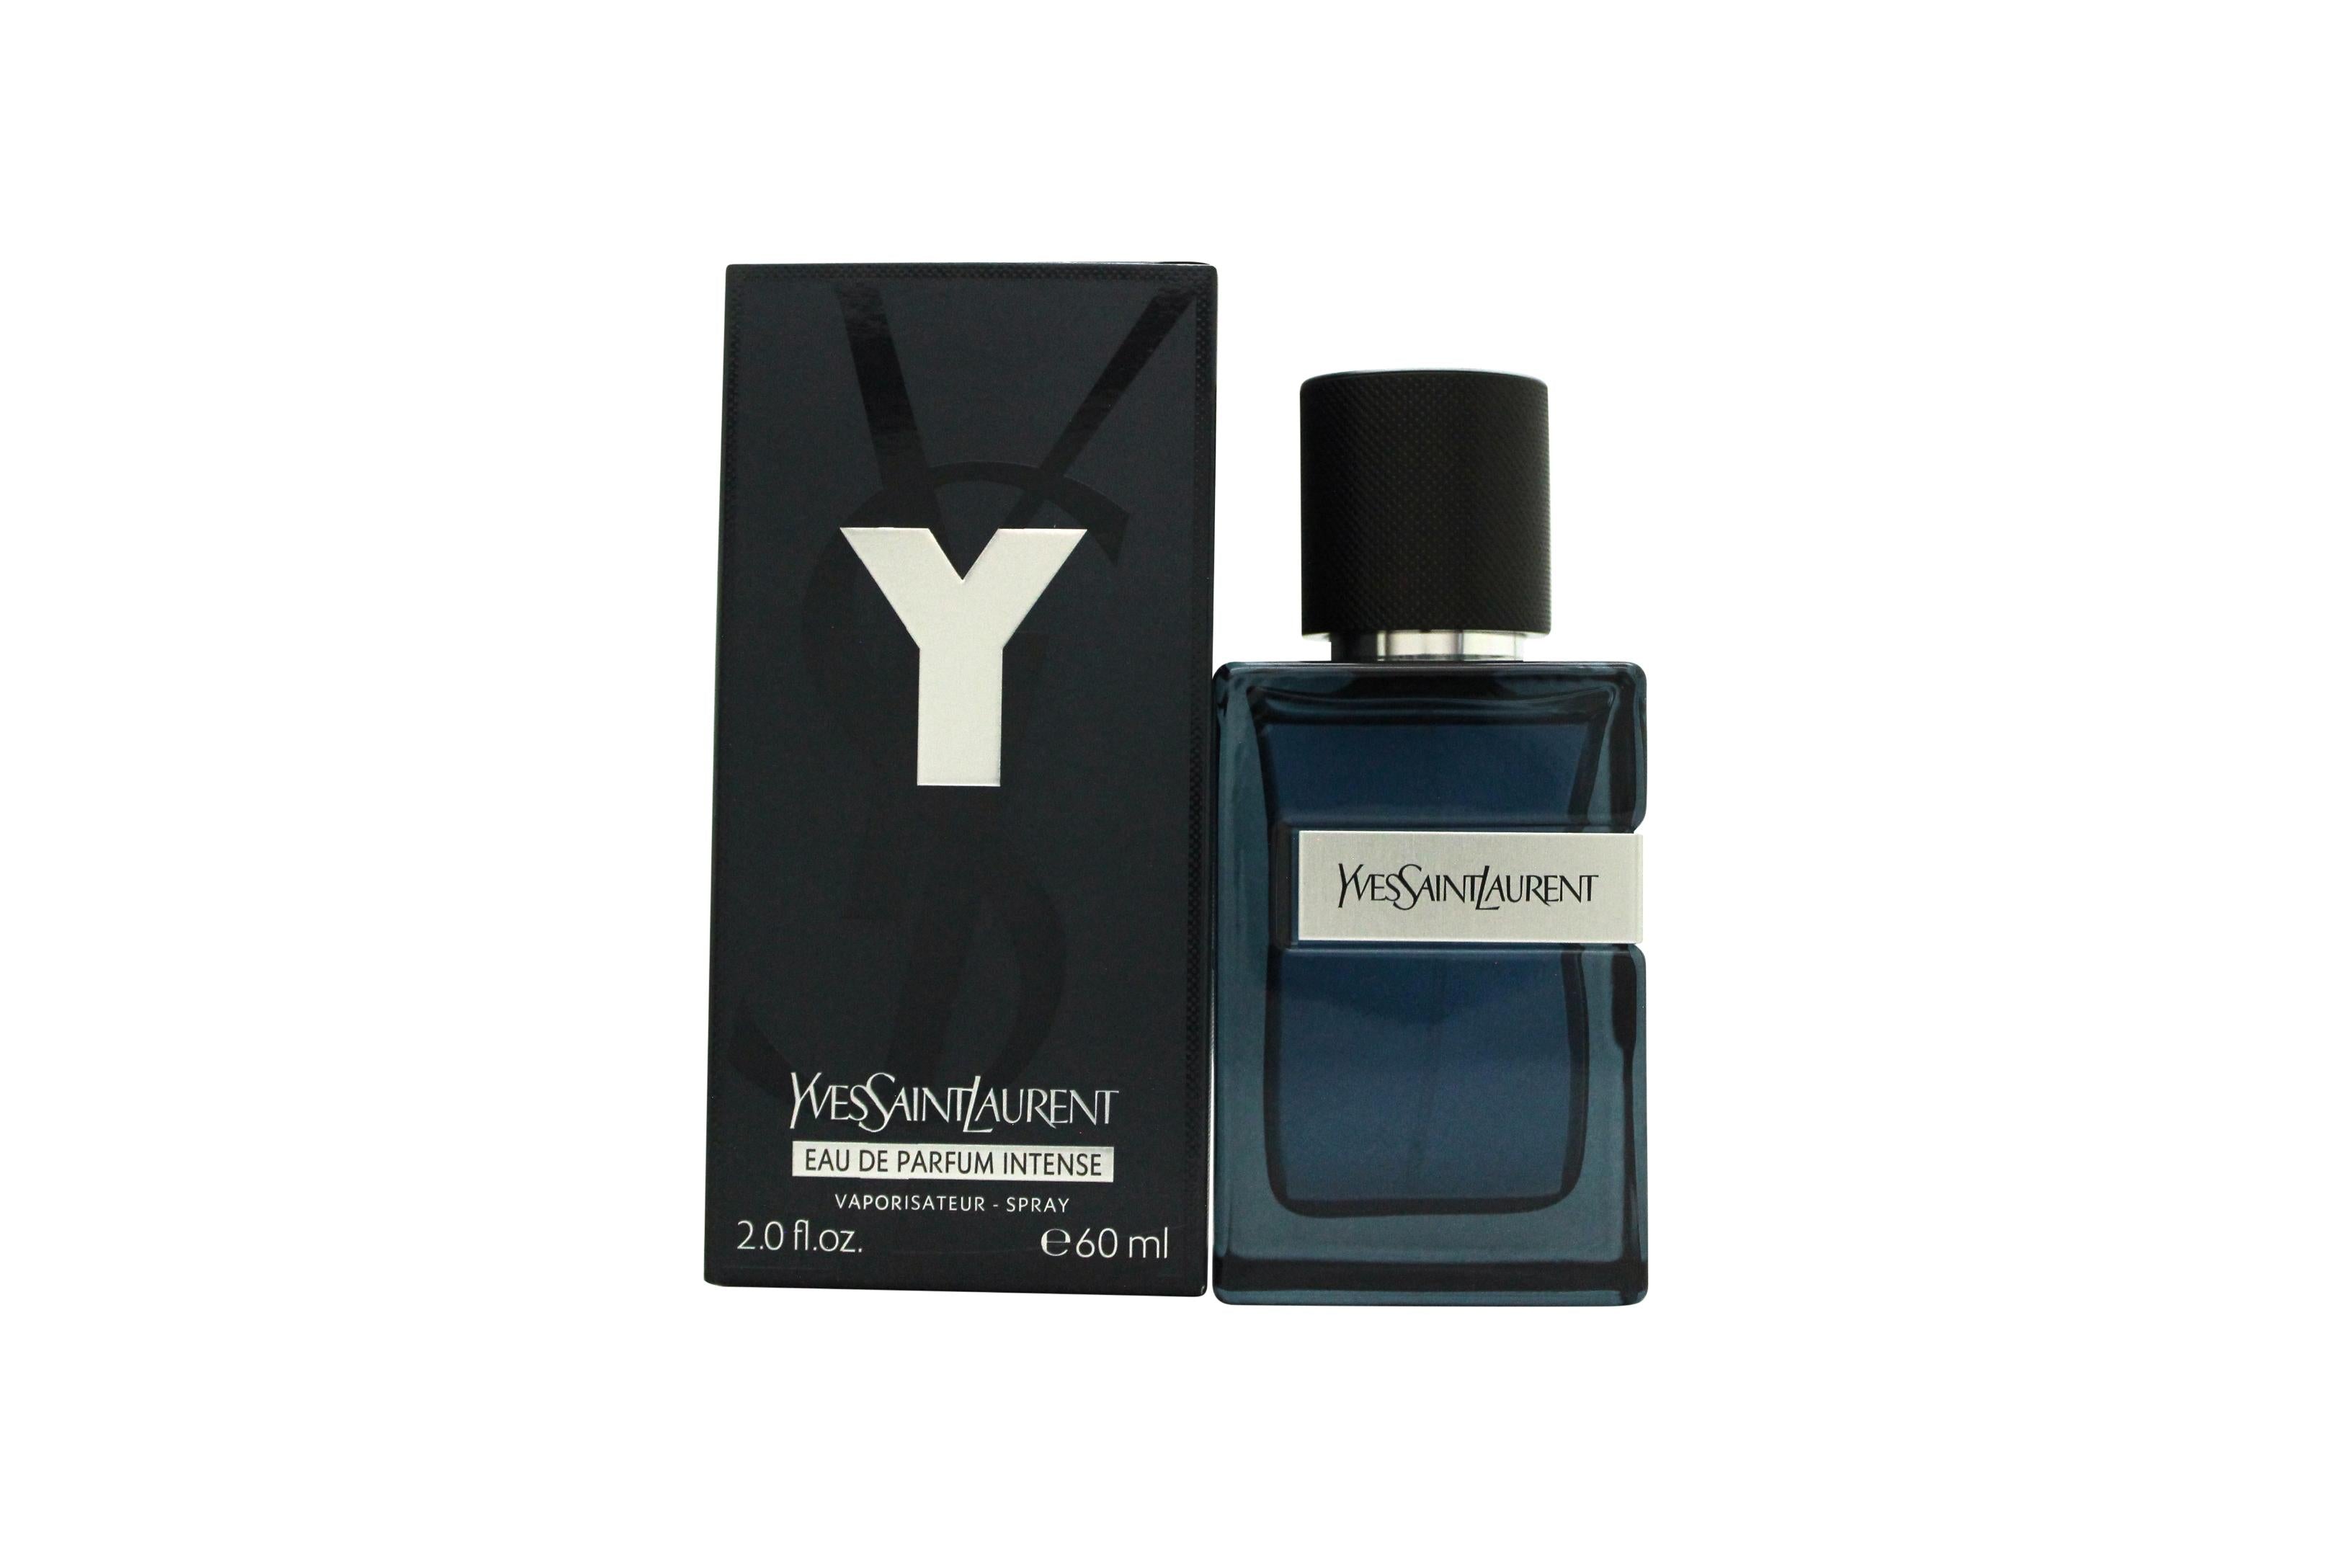 View Yves Saint Laurent Y Eau de Parfum Intense 60ml Spray information